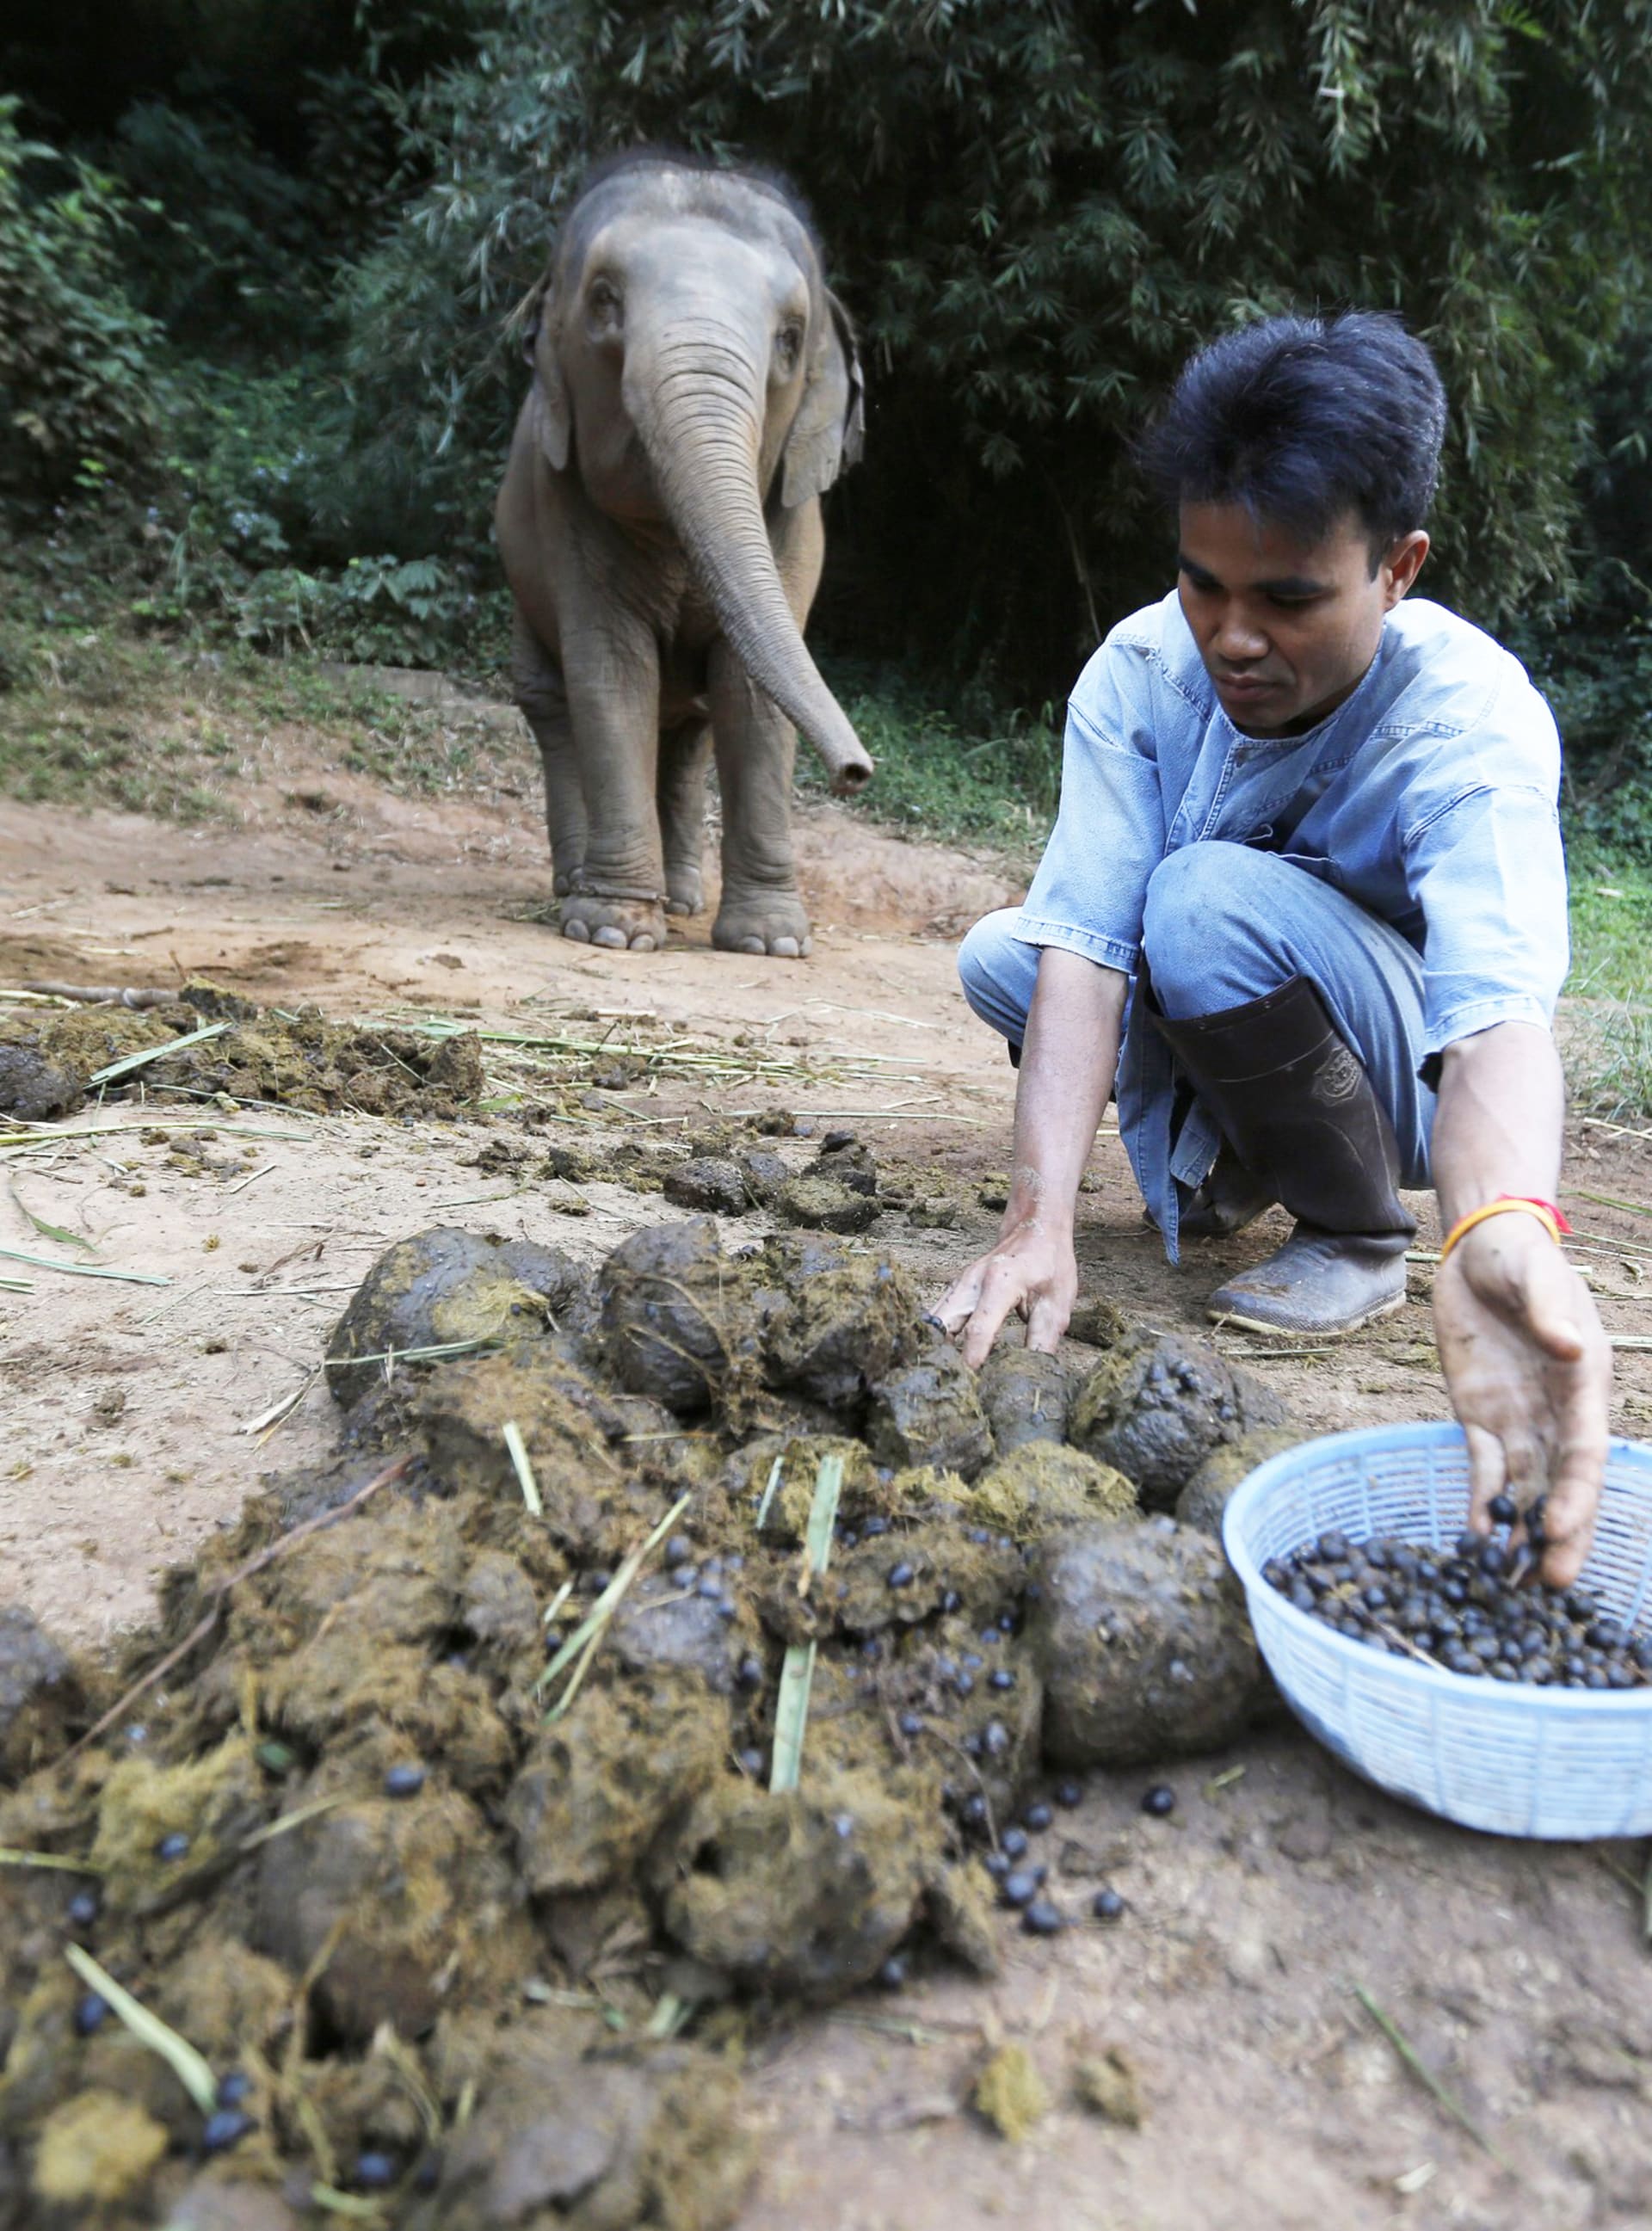 Produkcí nejdražší kávy světa pověřil Dinkin tři desítky slonů. Zrnka kávy, která projdou jejich zažívacím traktem, pak zaměstnanci vybírají ručně.